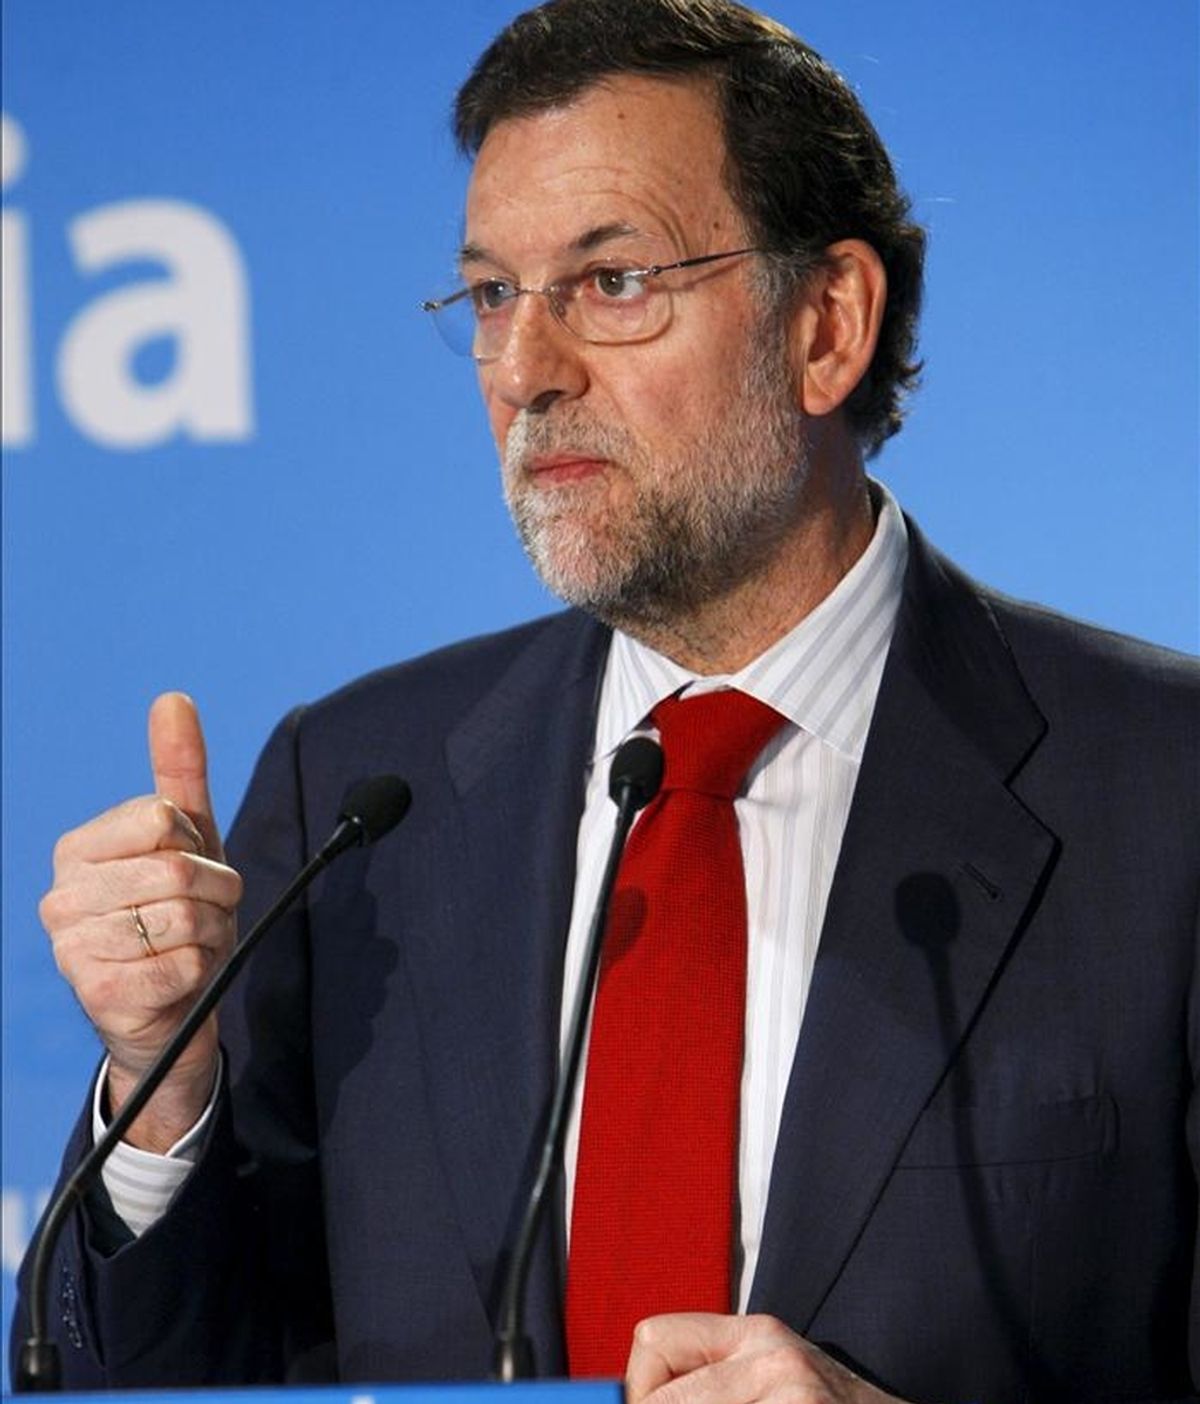 El presidente del PP, Mariano Rajoy, clausuró hoy unas jornadas sobre Europa, organizadas por esta fuerza política, en un acto en el que intervinieron ambién Alberto Ruiz Gallardón, Esperanza Aguirre y Jaime Mayor Oreja. EFE